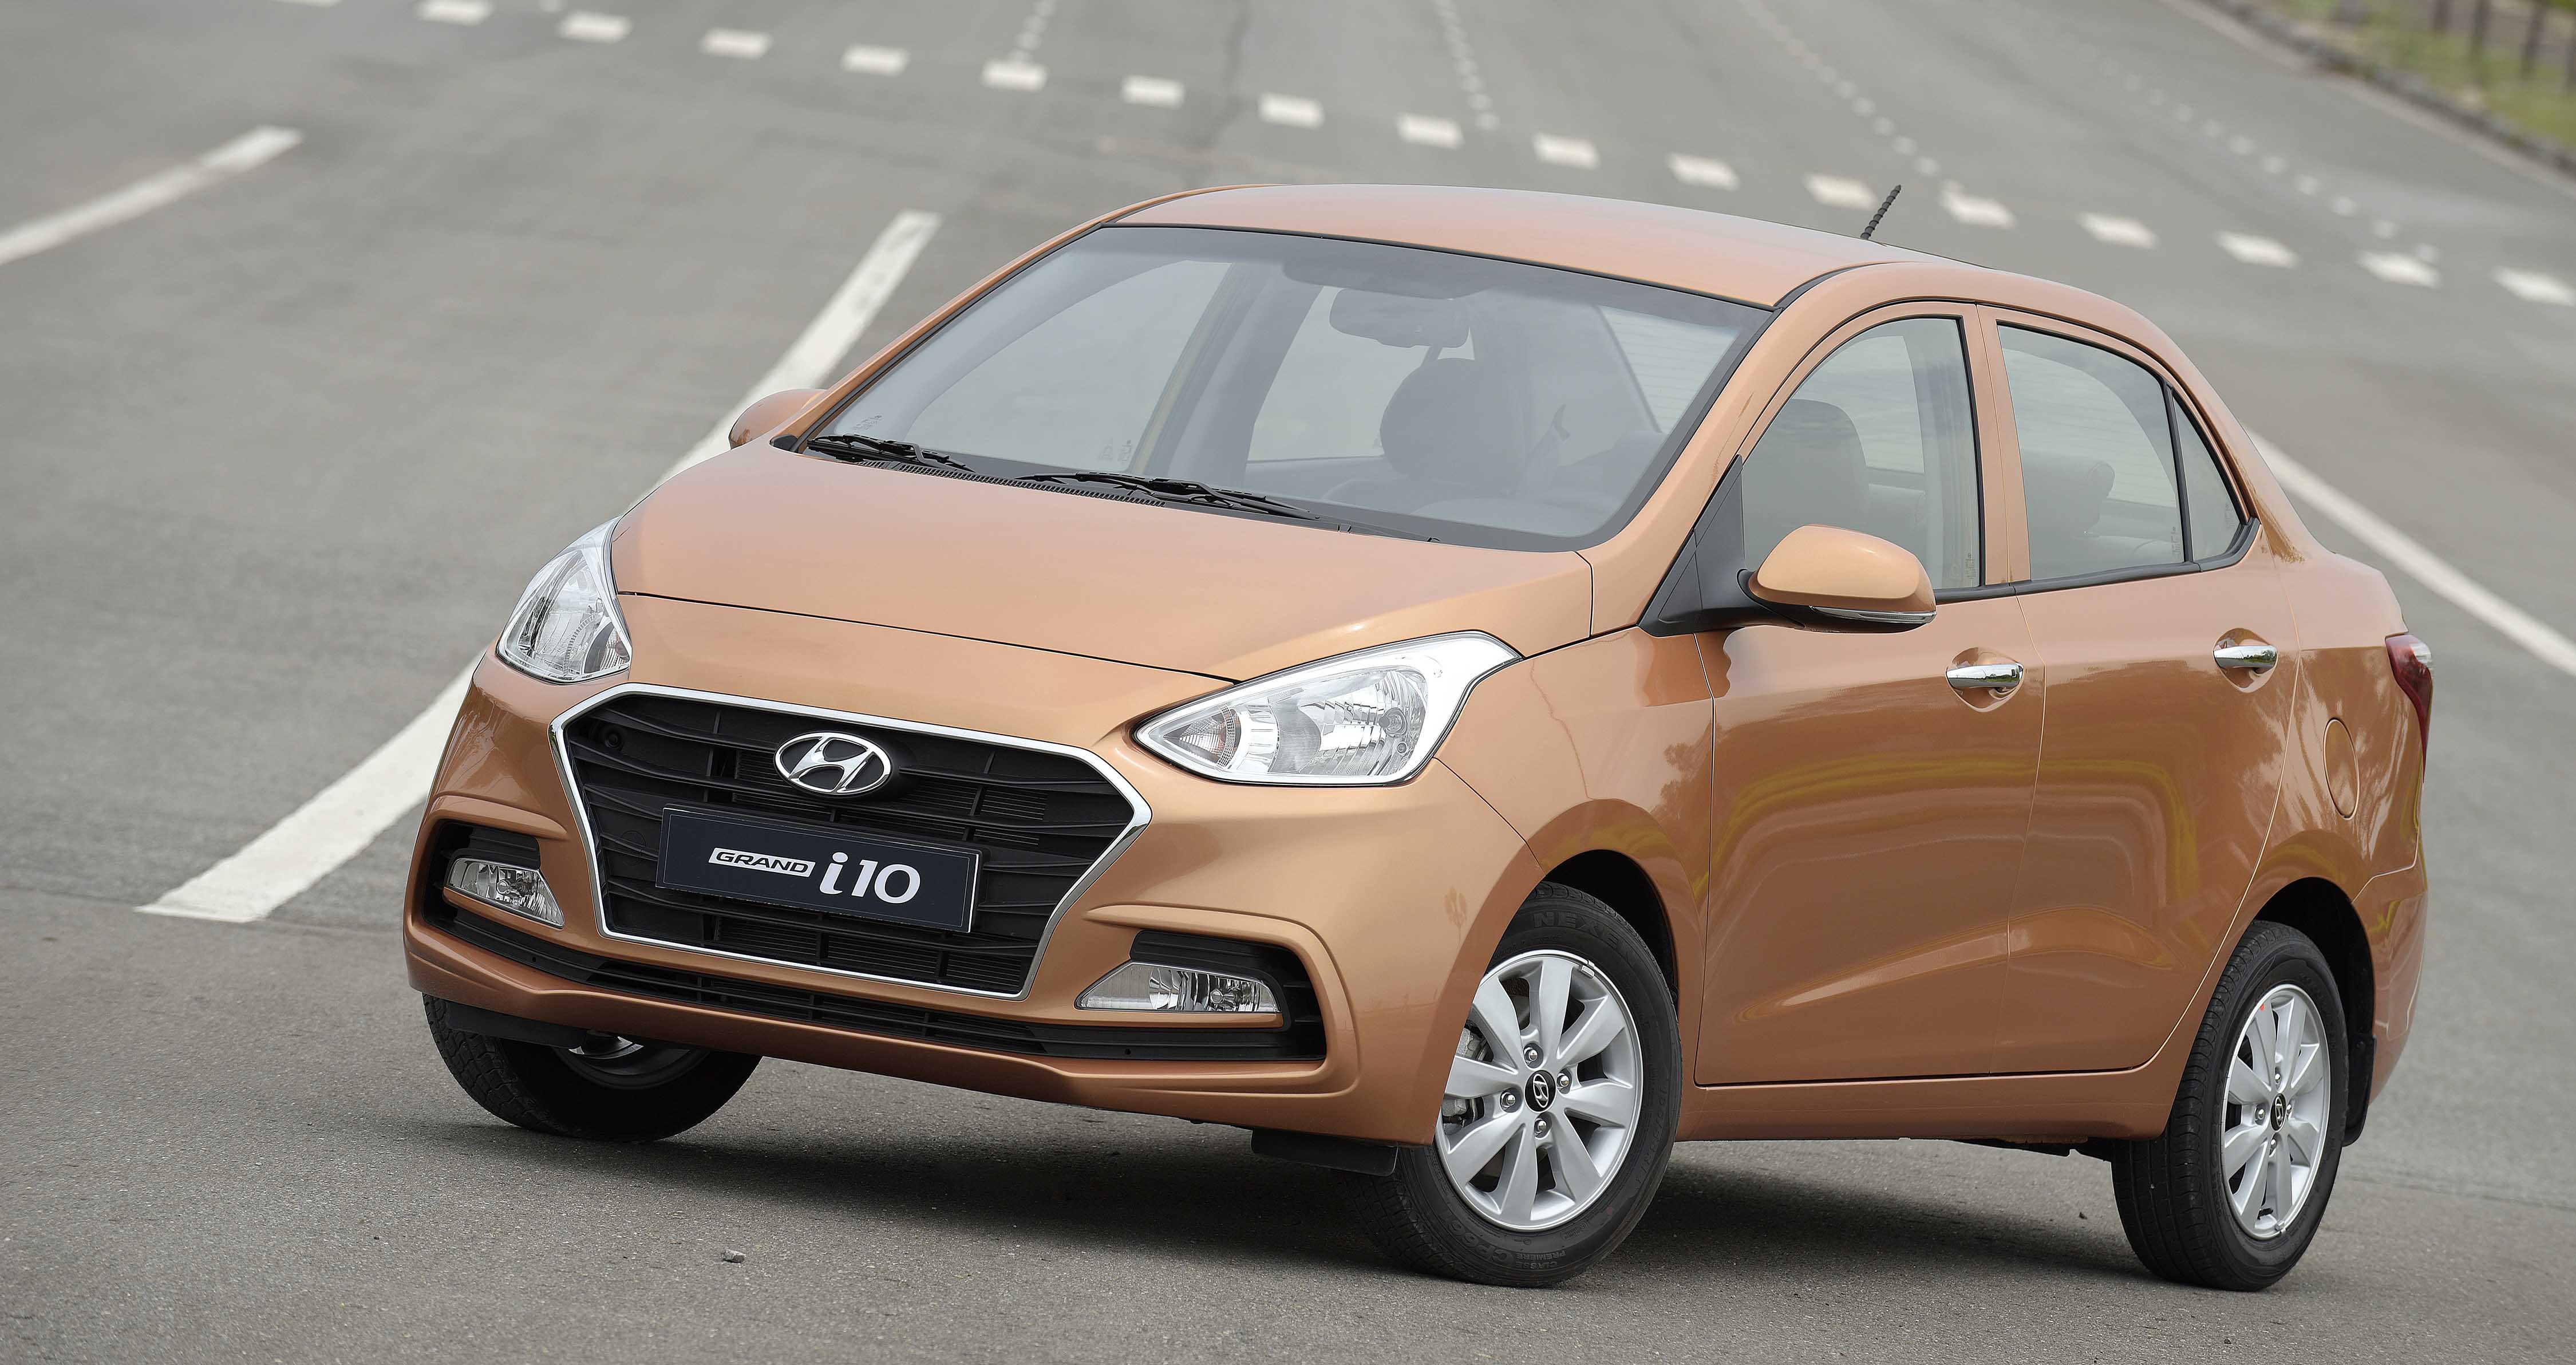 Điểm mặt những mẫu xe của Hyundai, Mazda bất ngờ tăng giá trong tháng 5/2018